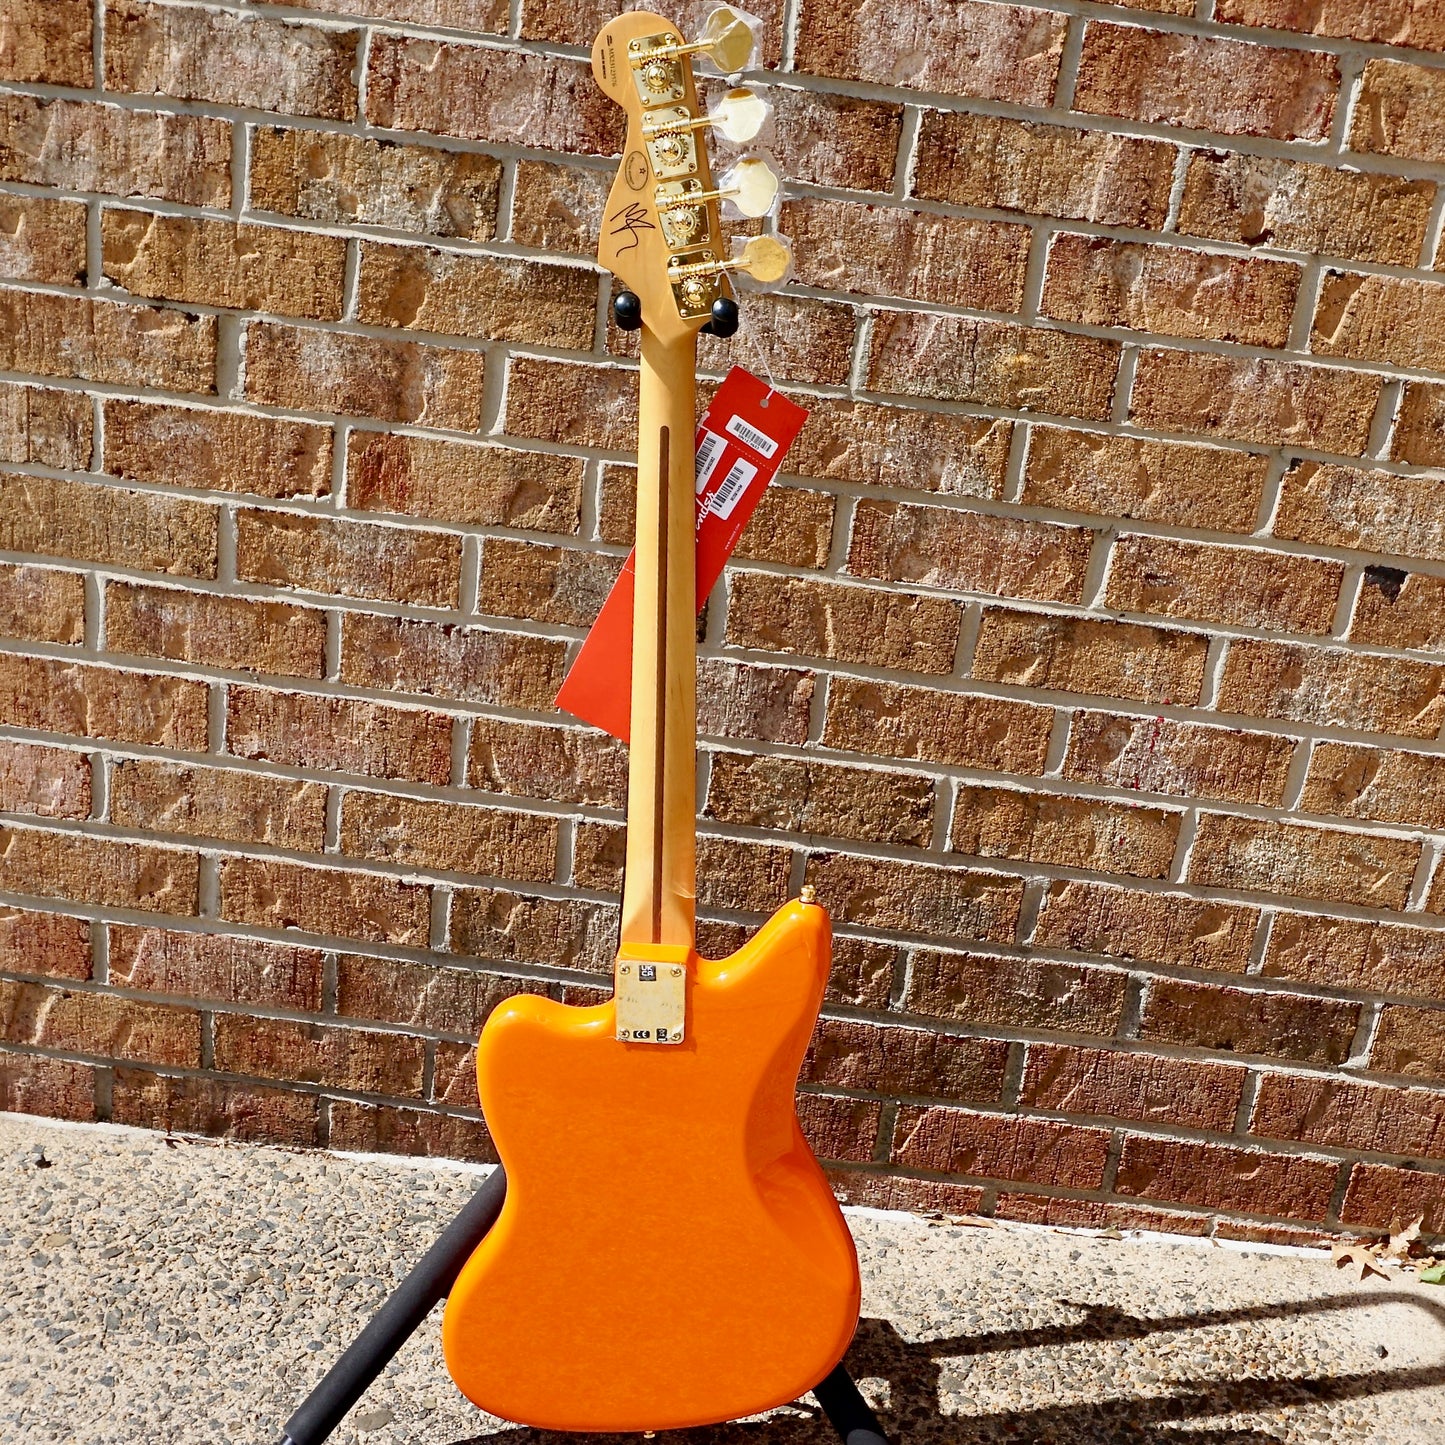 Fender Limited Edition Mike Kerr Jaguar Bass Rosewood Fingerboard Tiger's Blood Orange